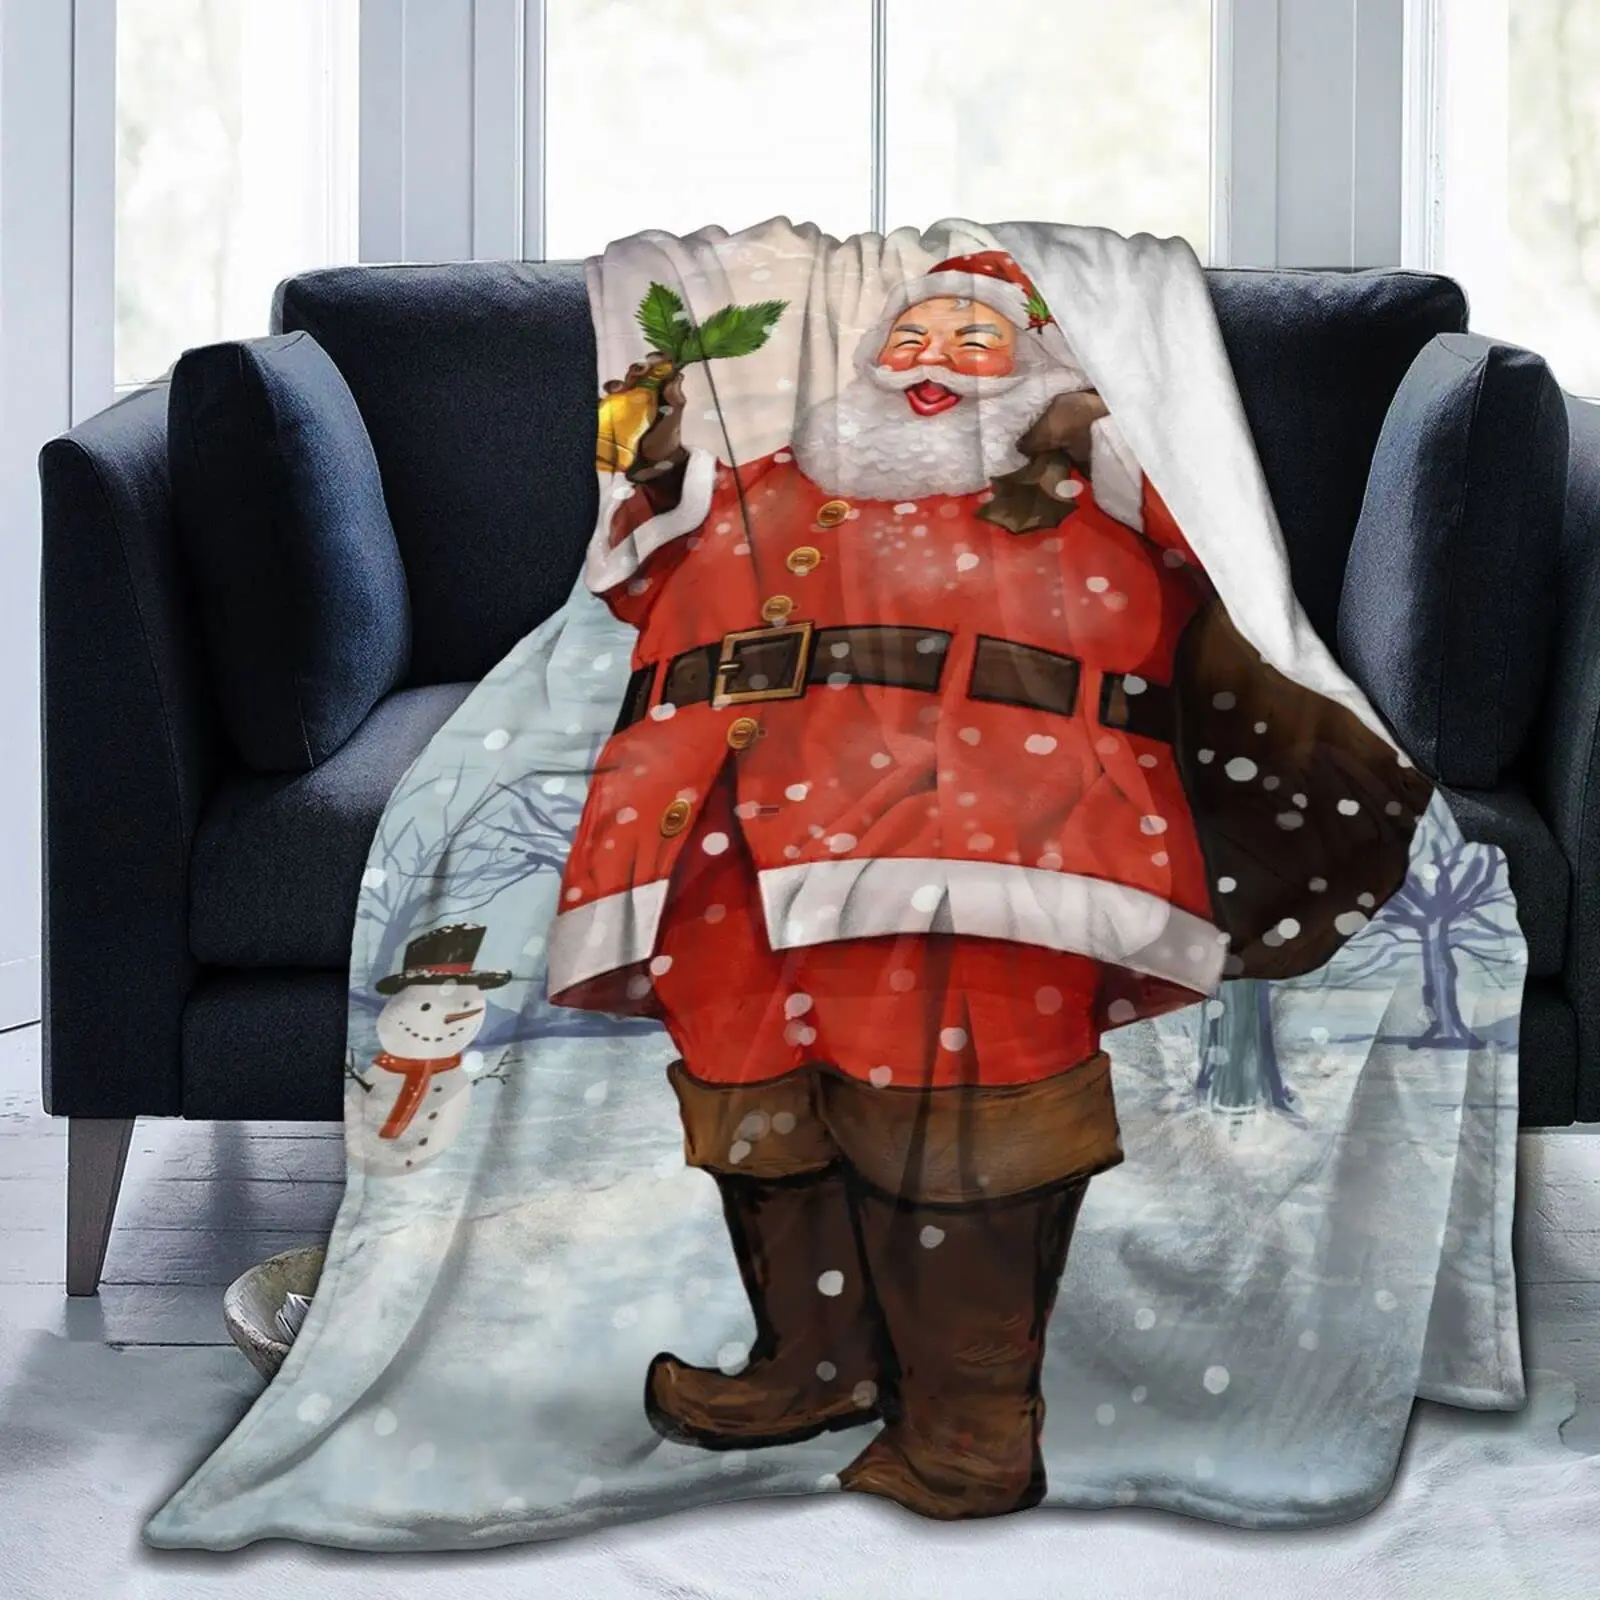 

Красное фланелевое одеяло, праздничное мягкое уютное теплое плюшевое покрывало с Санта Клаусом, рождественским и новогодним принтом, подарок для дивана или кровати